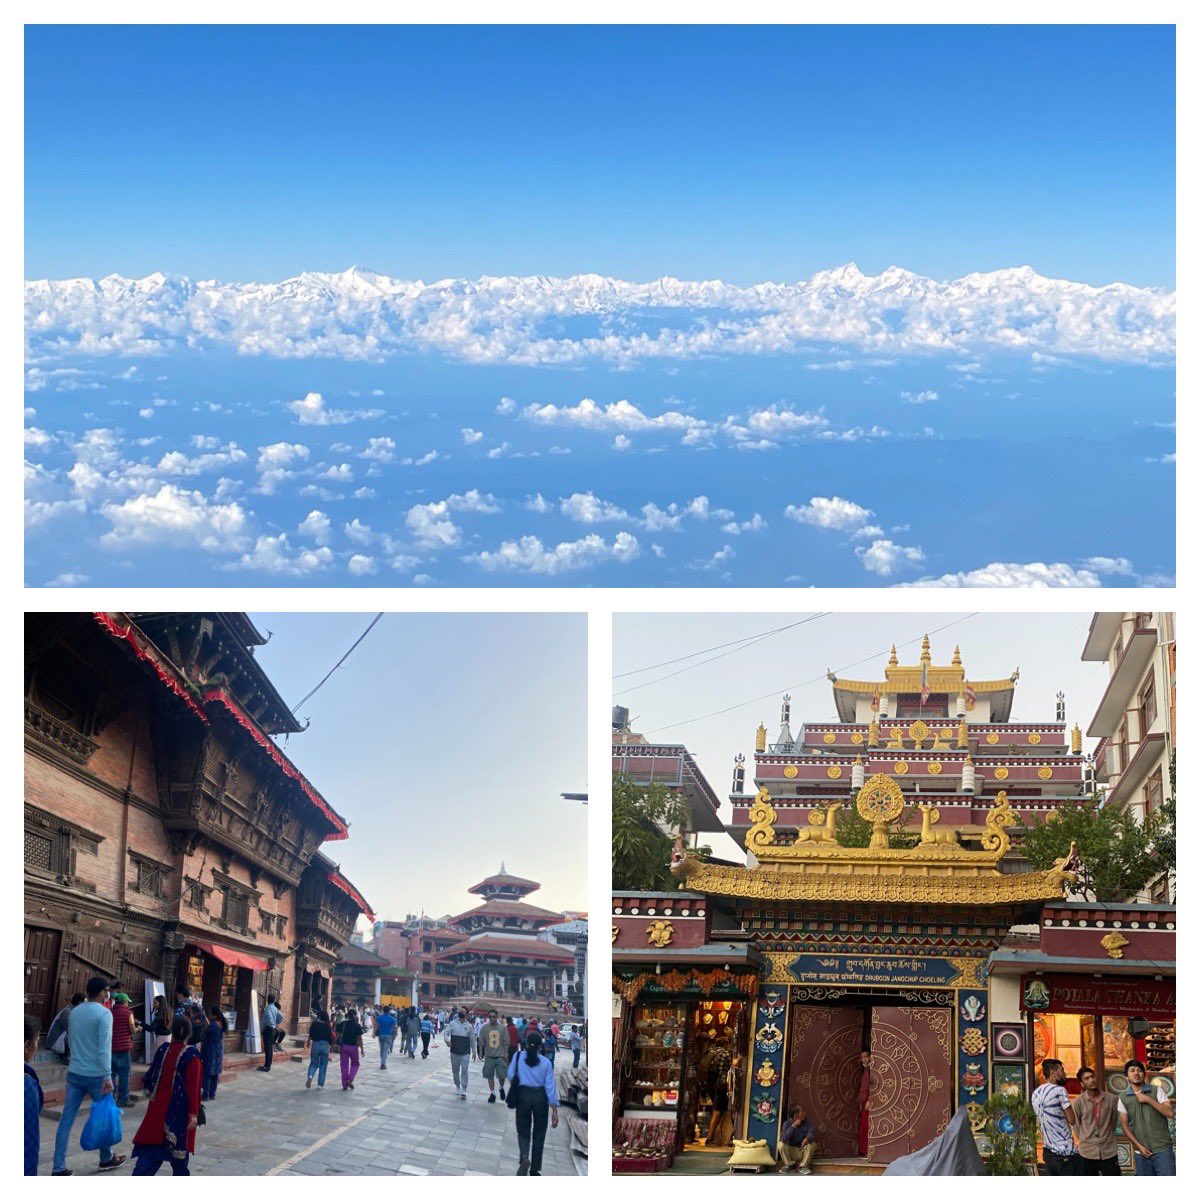 Ja, den fjellkjeden #Himalayas #Kathmandu Ny by, nye historier. Nepal har vore ein viktig samarbeidspartner og stort bistandsland i mange tiår. Og har gjort store framsteg, til dømes der Noreg har bidratt spesielt: Utbygging av vannkraft og utdanning @noradno @Utenriksdept